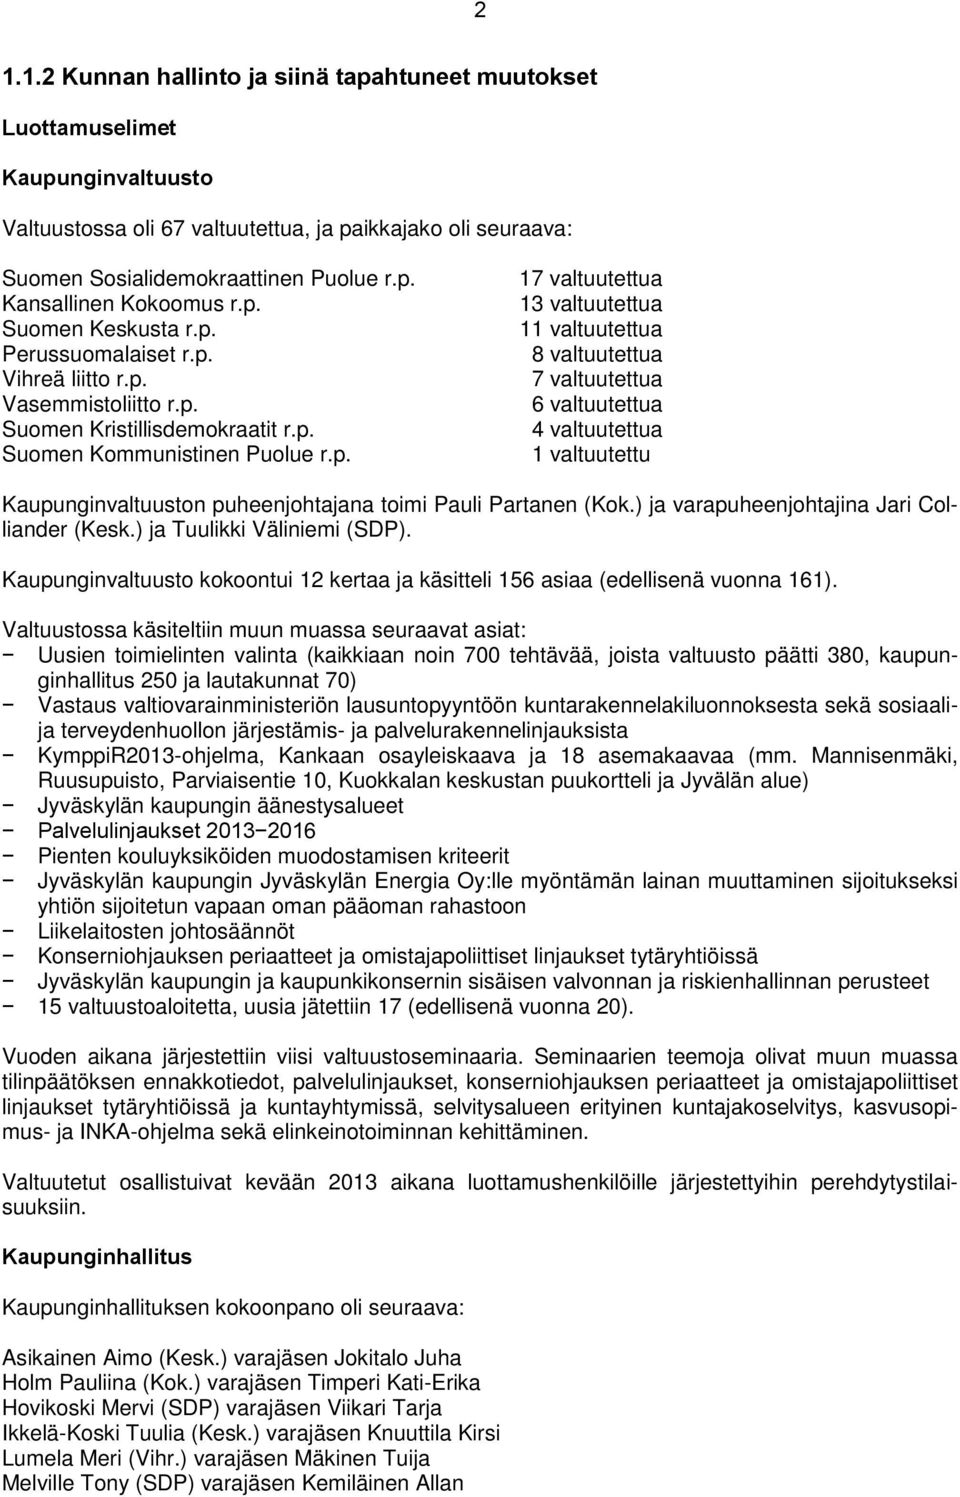 ) ja varapuheenjohtajina Jari Colliander (Kesk.) ja Tuulikki Väliniemi (SDP). Kaupunginvaltuusto kokoontui 12 kertaa ja käsitteli 156 asiaa (edellisenä vuonna 161).